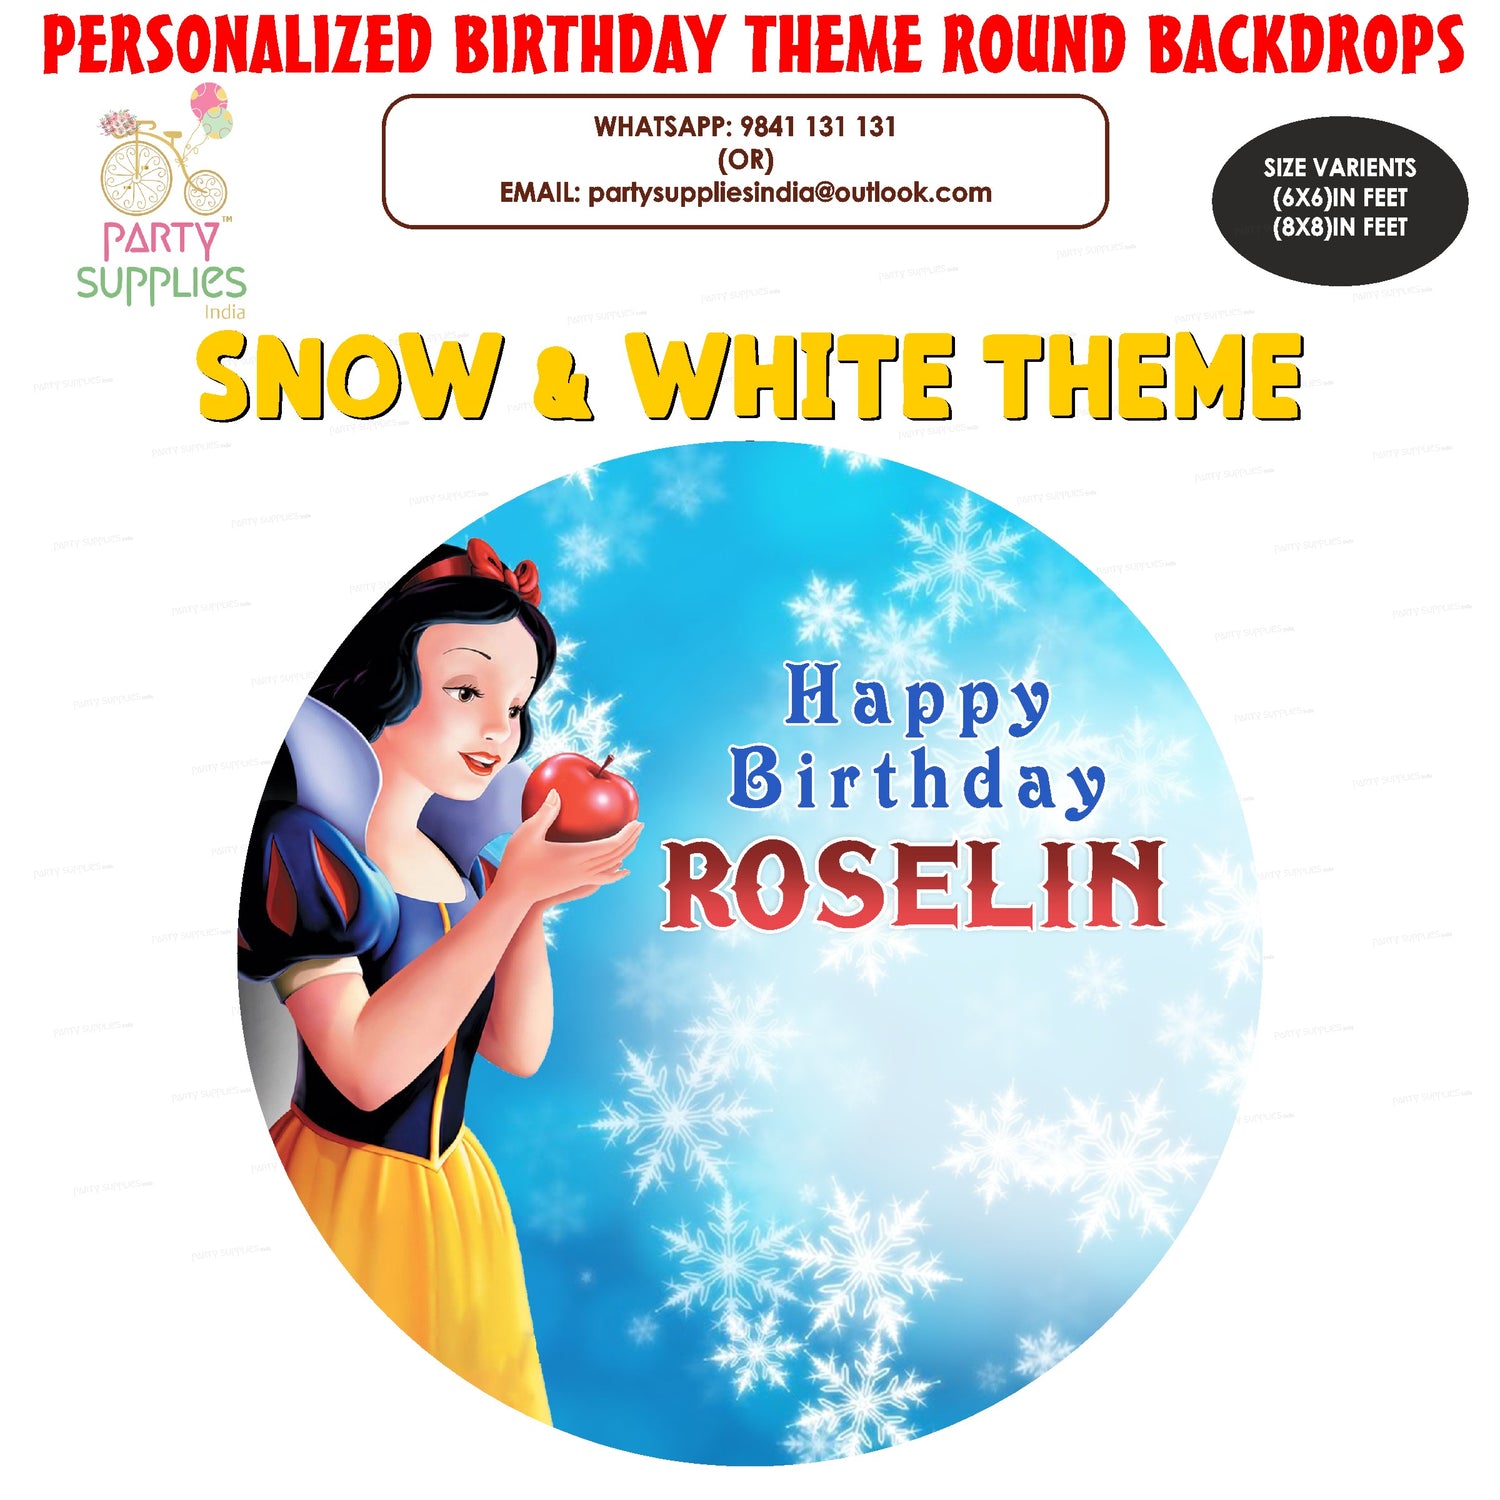 PSI Snow And White Theme Customized Round Backdrop